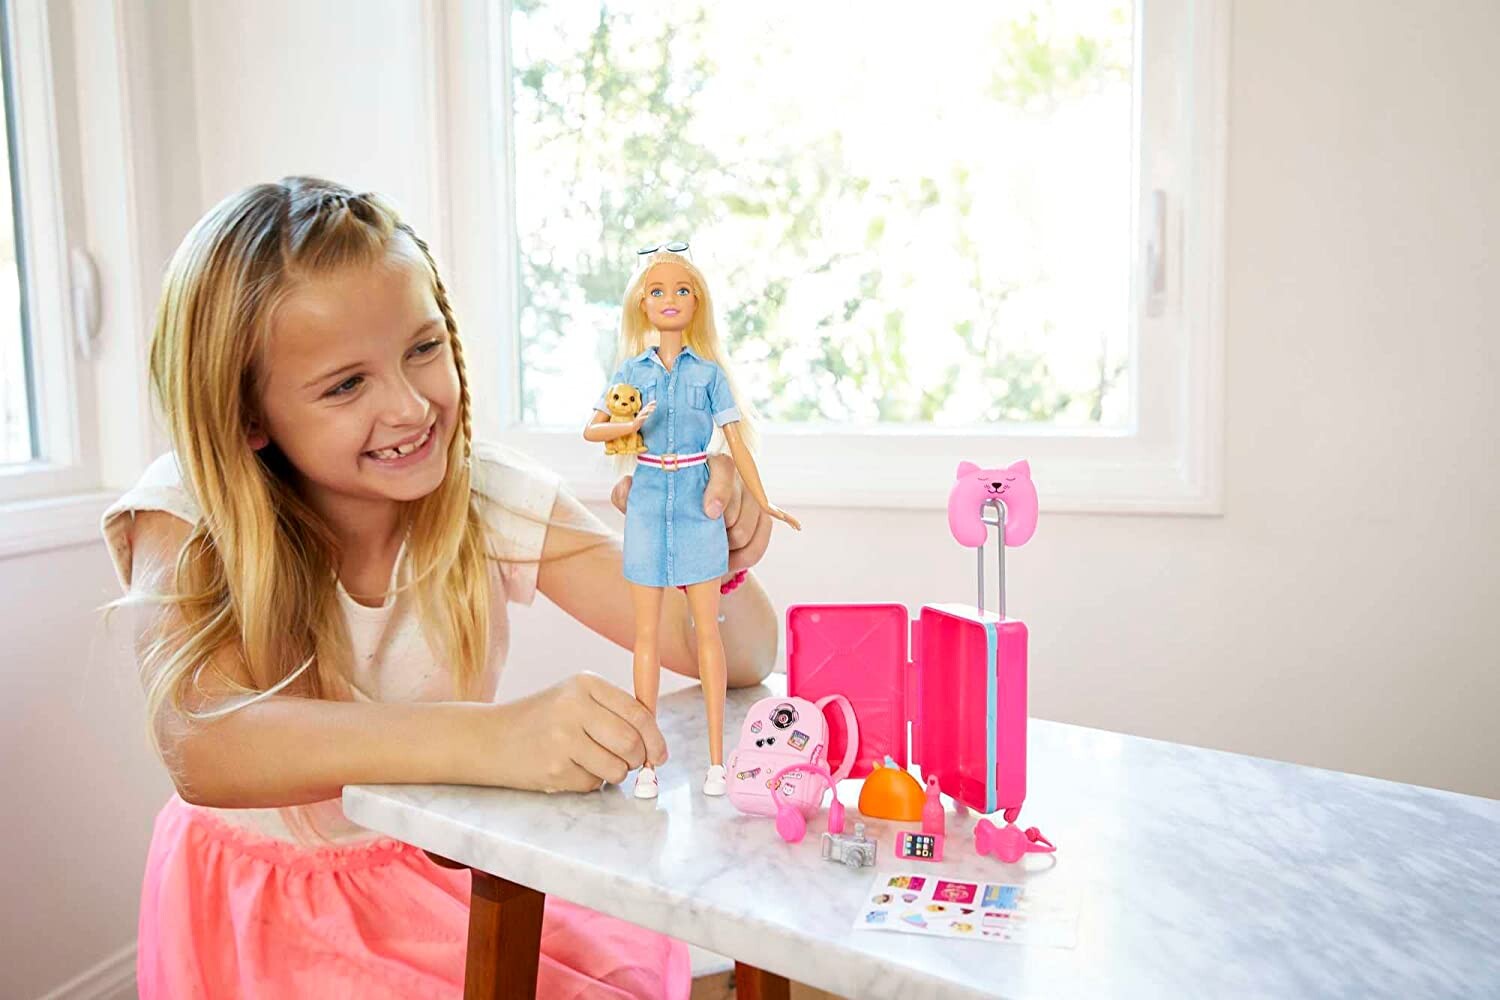 Barbie Voyage avec poupée, chien et accessoires, Barbie